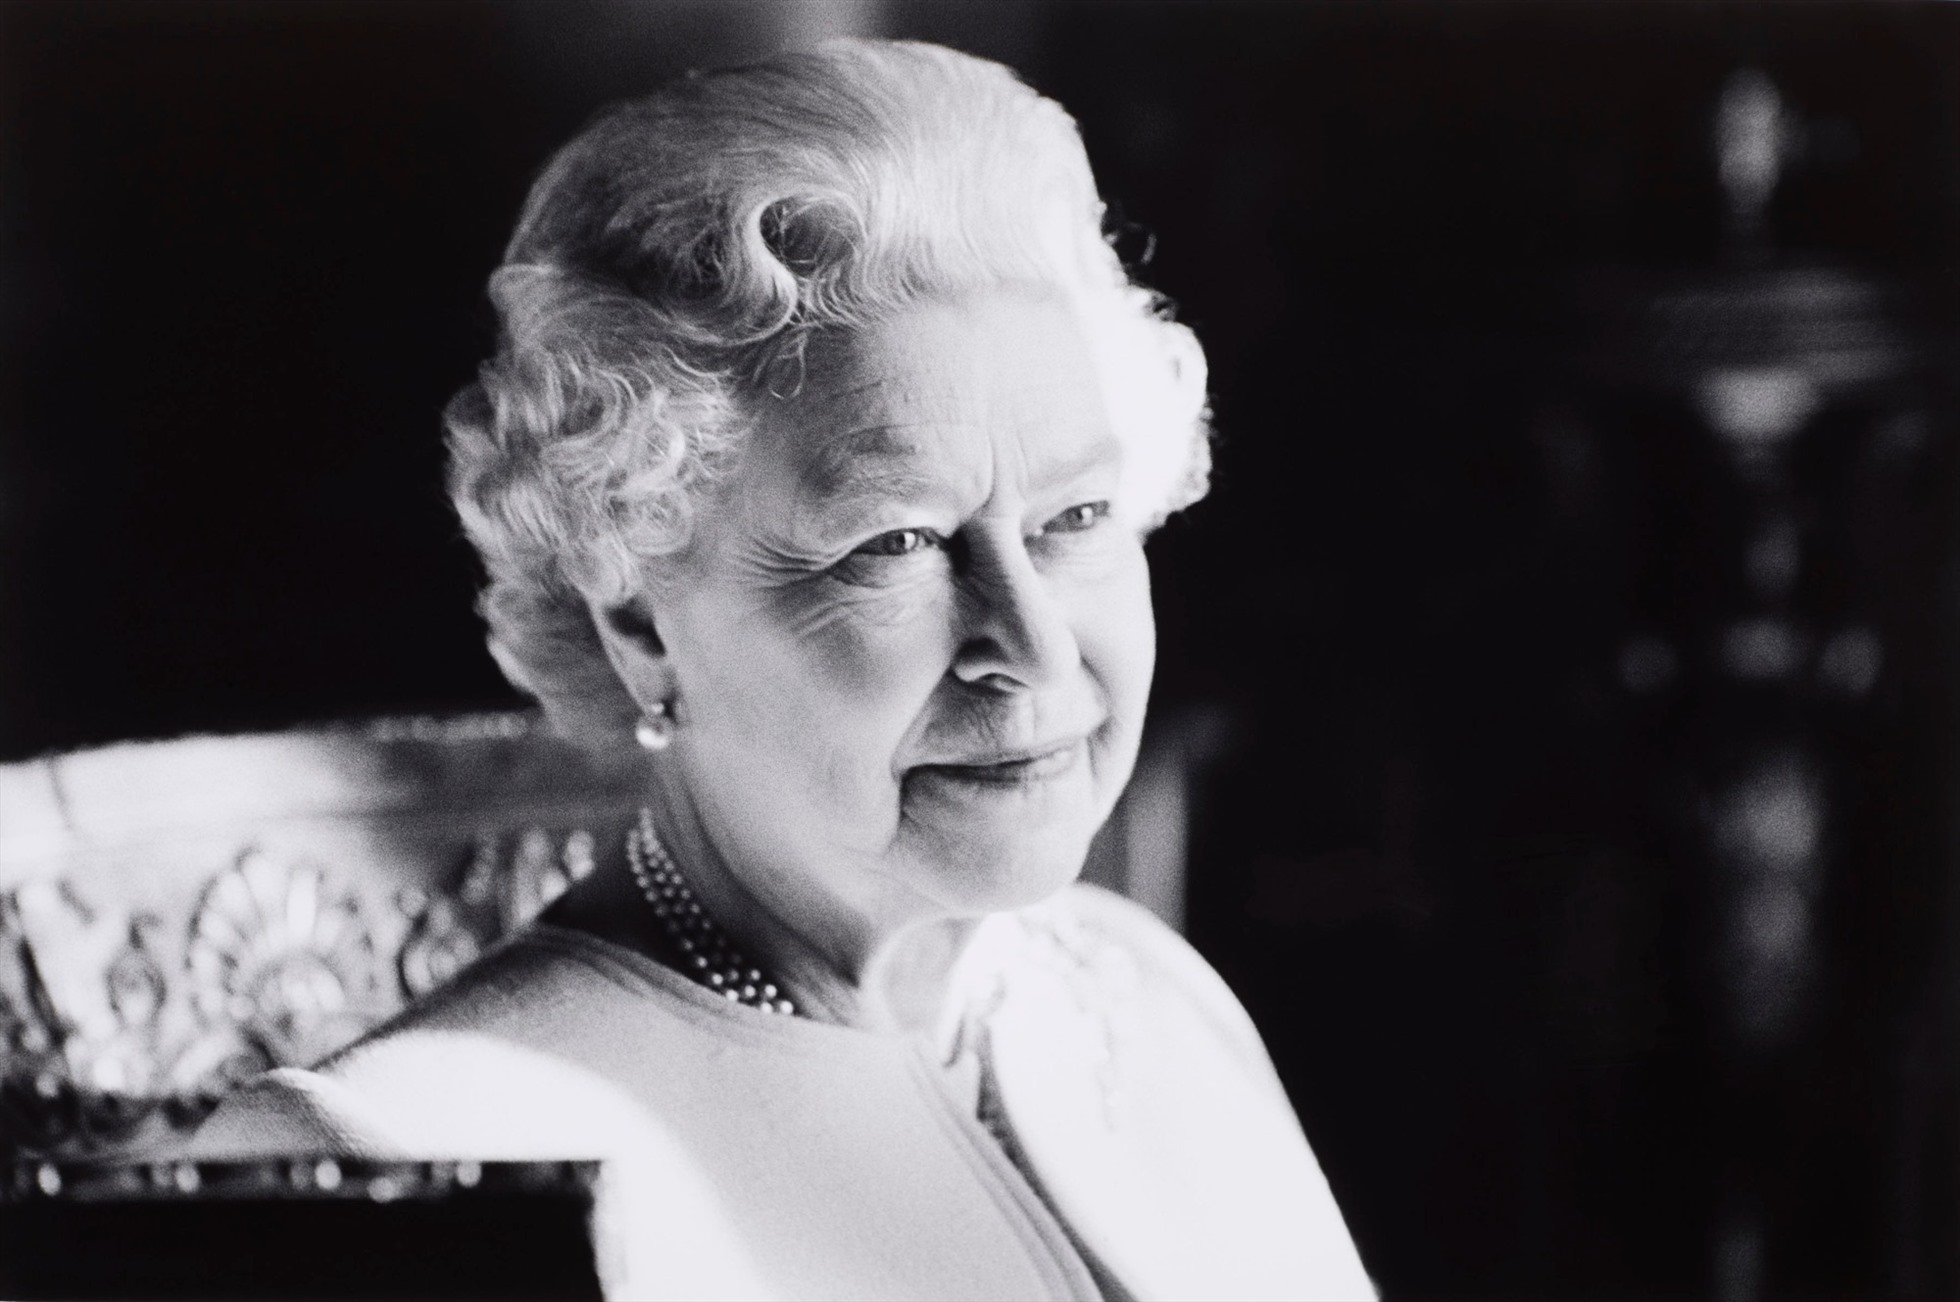 Nữ hoàng Elizabeth II mất ngày 8.9. Ảnh: Hoàng gia Anh